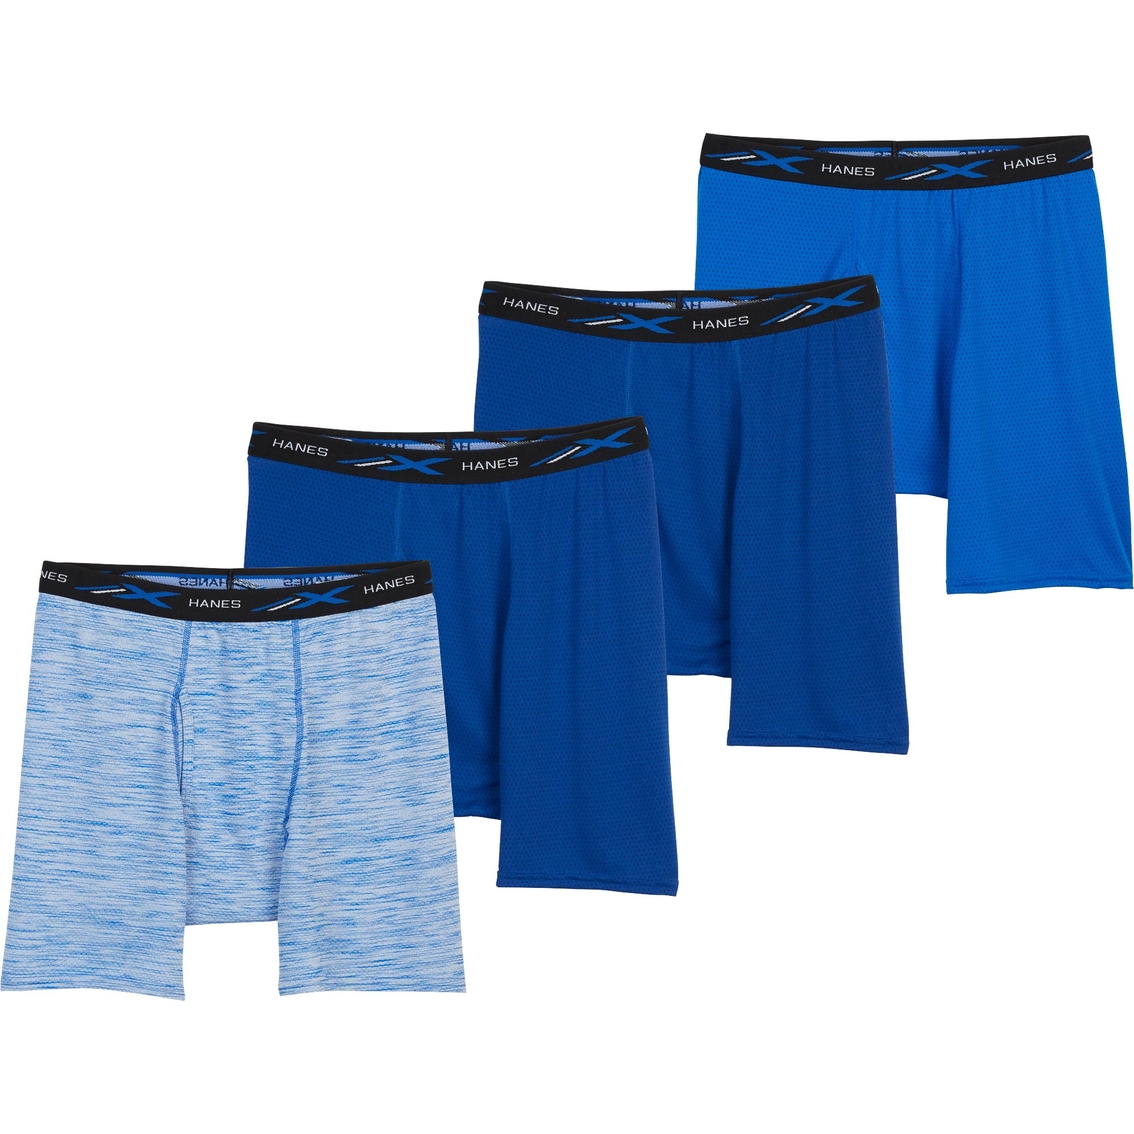 Hanes X-temp Lightweight Mesh Boxer Briefs 4 Pk. | Underwear | Clothing ...